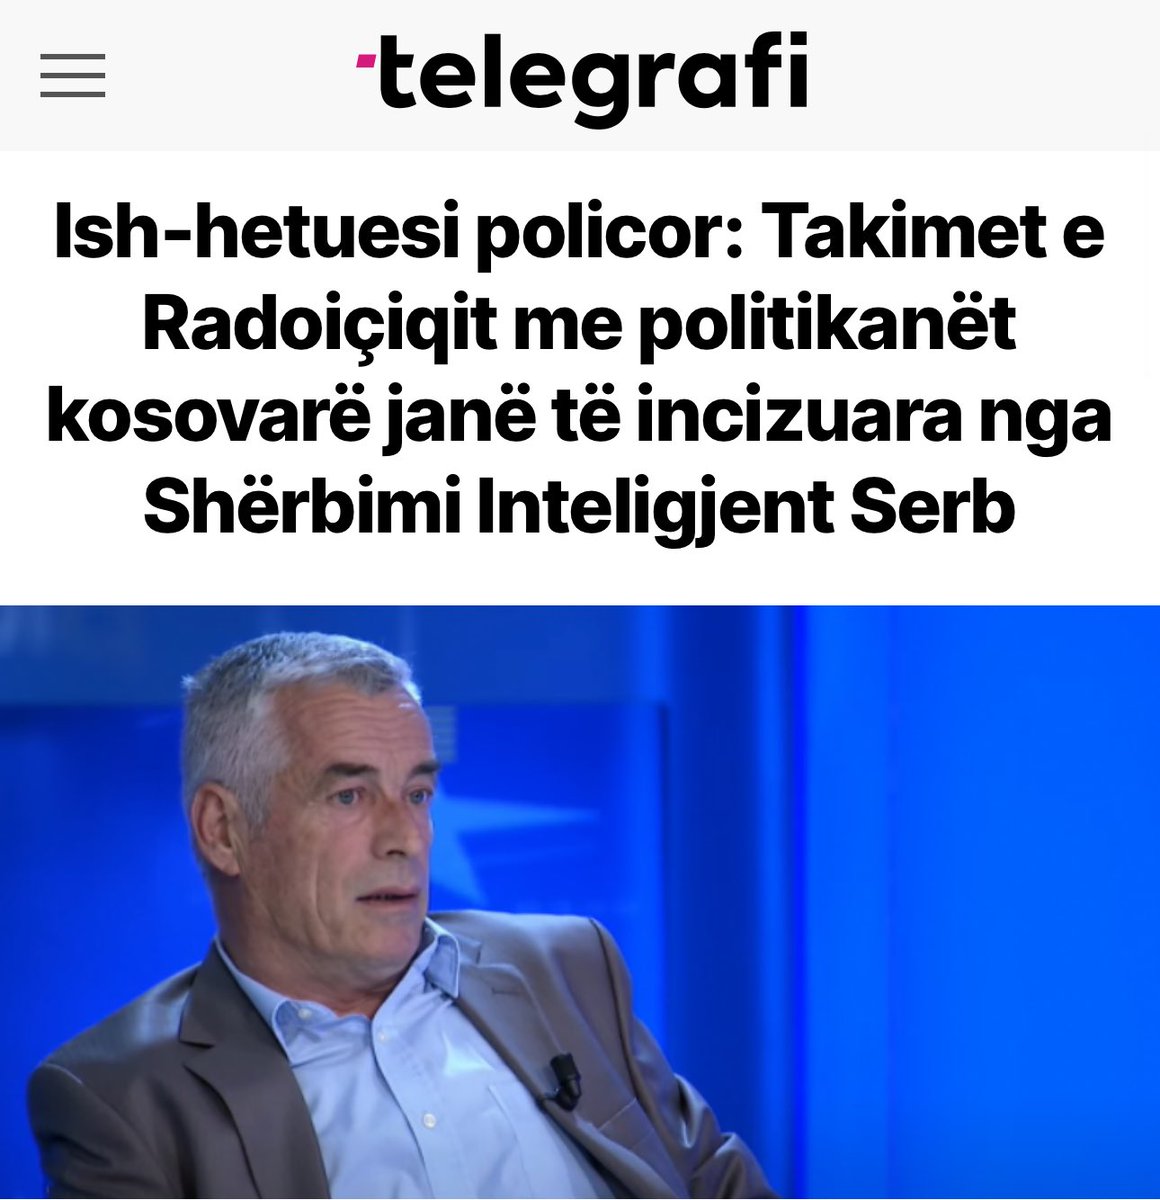 Publikimi i incizimeve audio nga @buzhala , qe jan nga inteligjenca serbe, pak para marrveshjes te rendesishme per sigurine e shtetit, esht jashtezakonisht shqetesues.

Qysh i ka marr aj keto incizime pa qenë i lidhur me inteligjencen serbe?

#openyoureyes